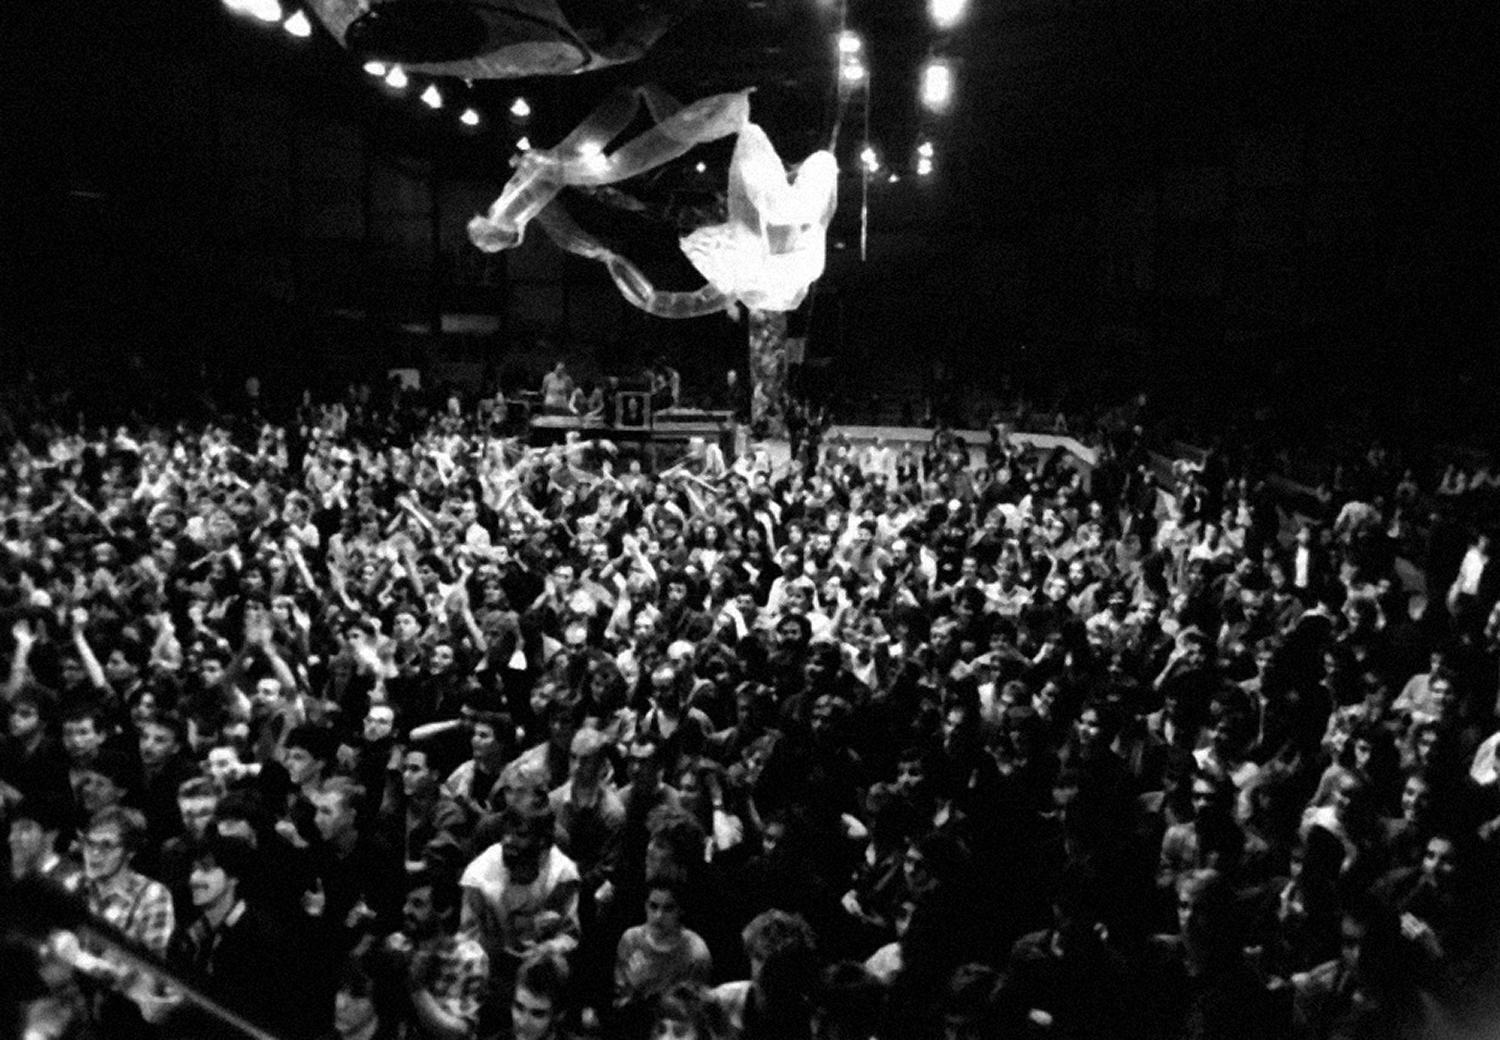 Na bratislavskom festivale Čertovo kolo v roku 1988 vystúpili aj kapely Bez ladu a skladu a Půlnoc.